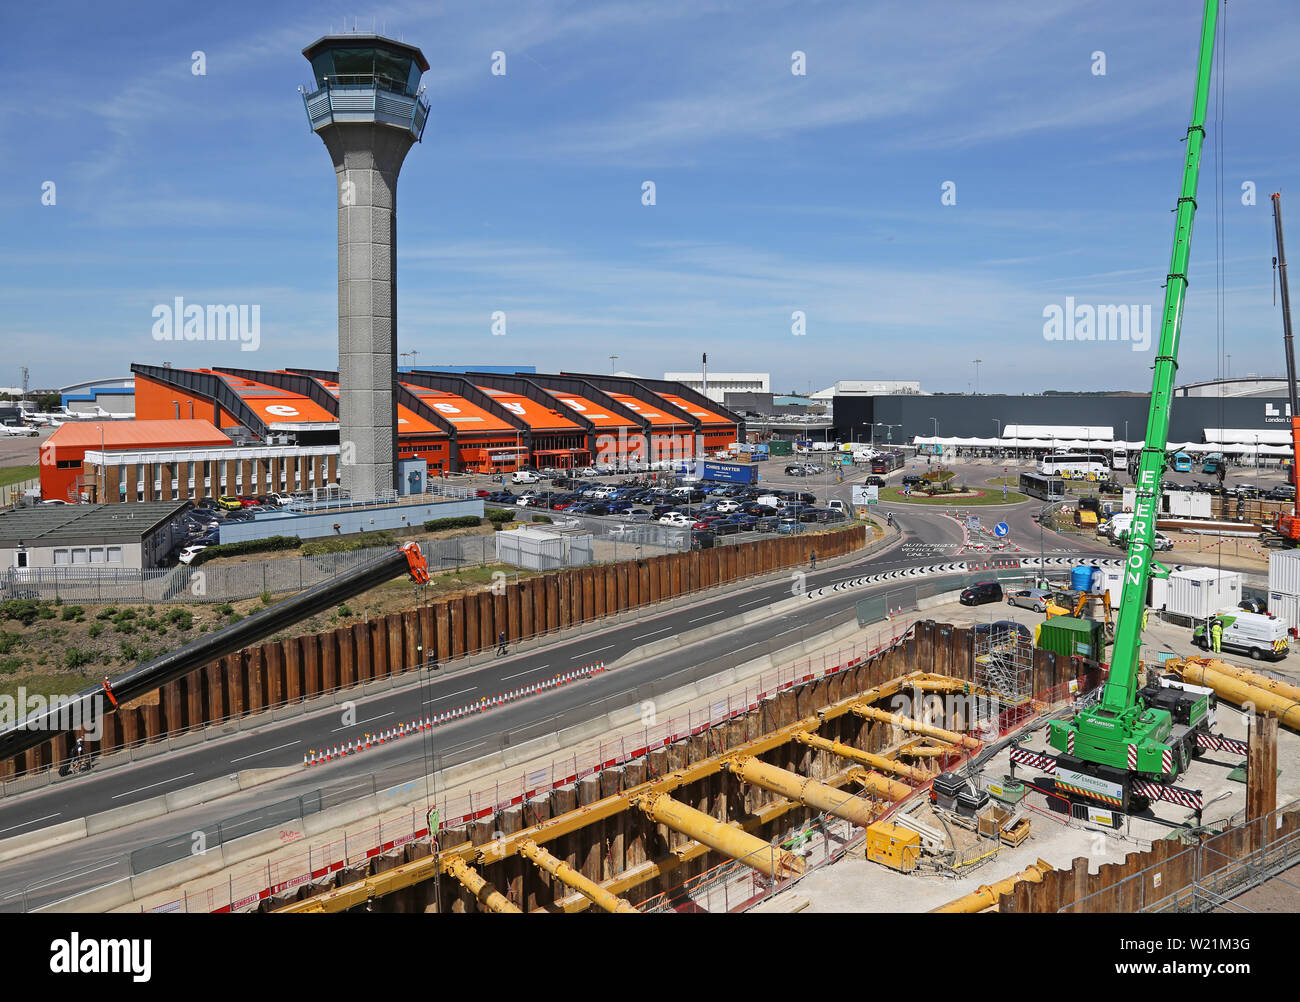 L'aeroporto London Luton, area centrale che mostra Easyjet capo ufficio, torre di controllo e di scavo per il nuovo DART rail link - aperto nel 2021. Foto Stock